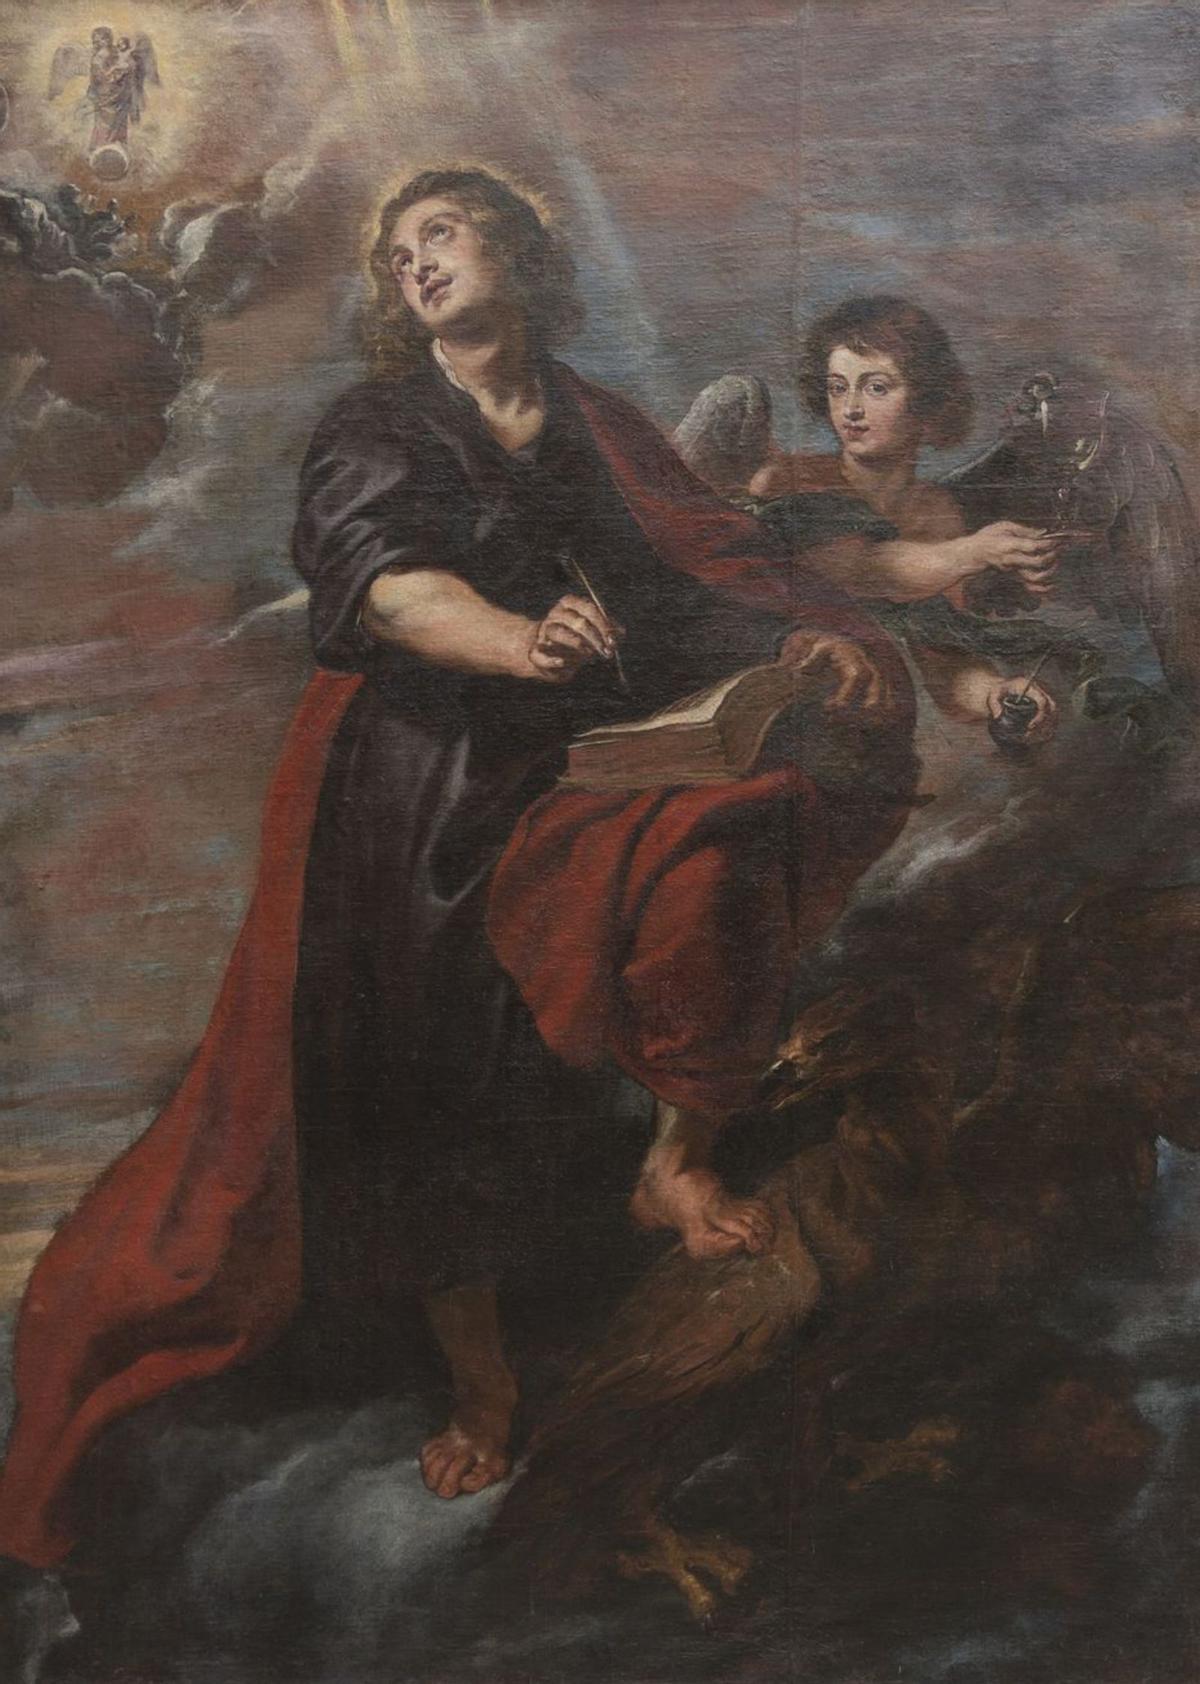 Peter Paul Rubens, San Juan evangelista en la isla de Patmos, Boadilla del Monte (Madrid), convento de la Encarnación. 